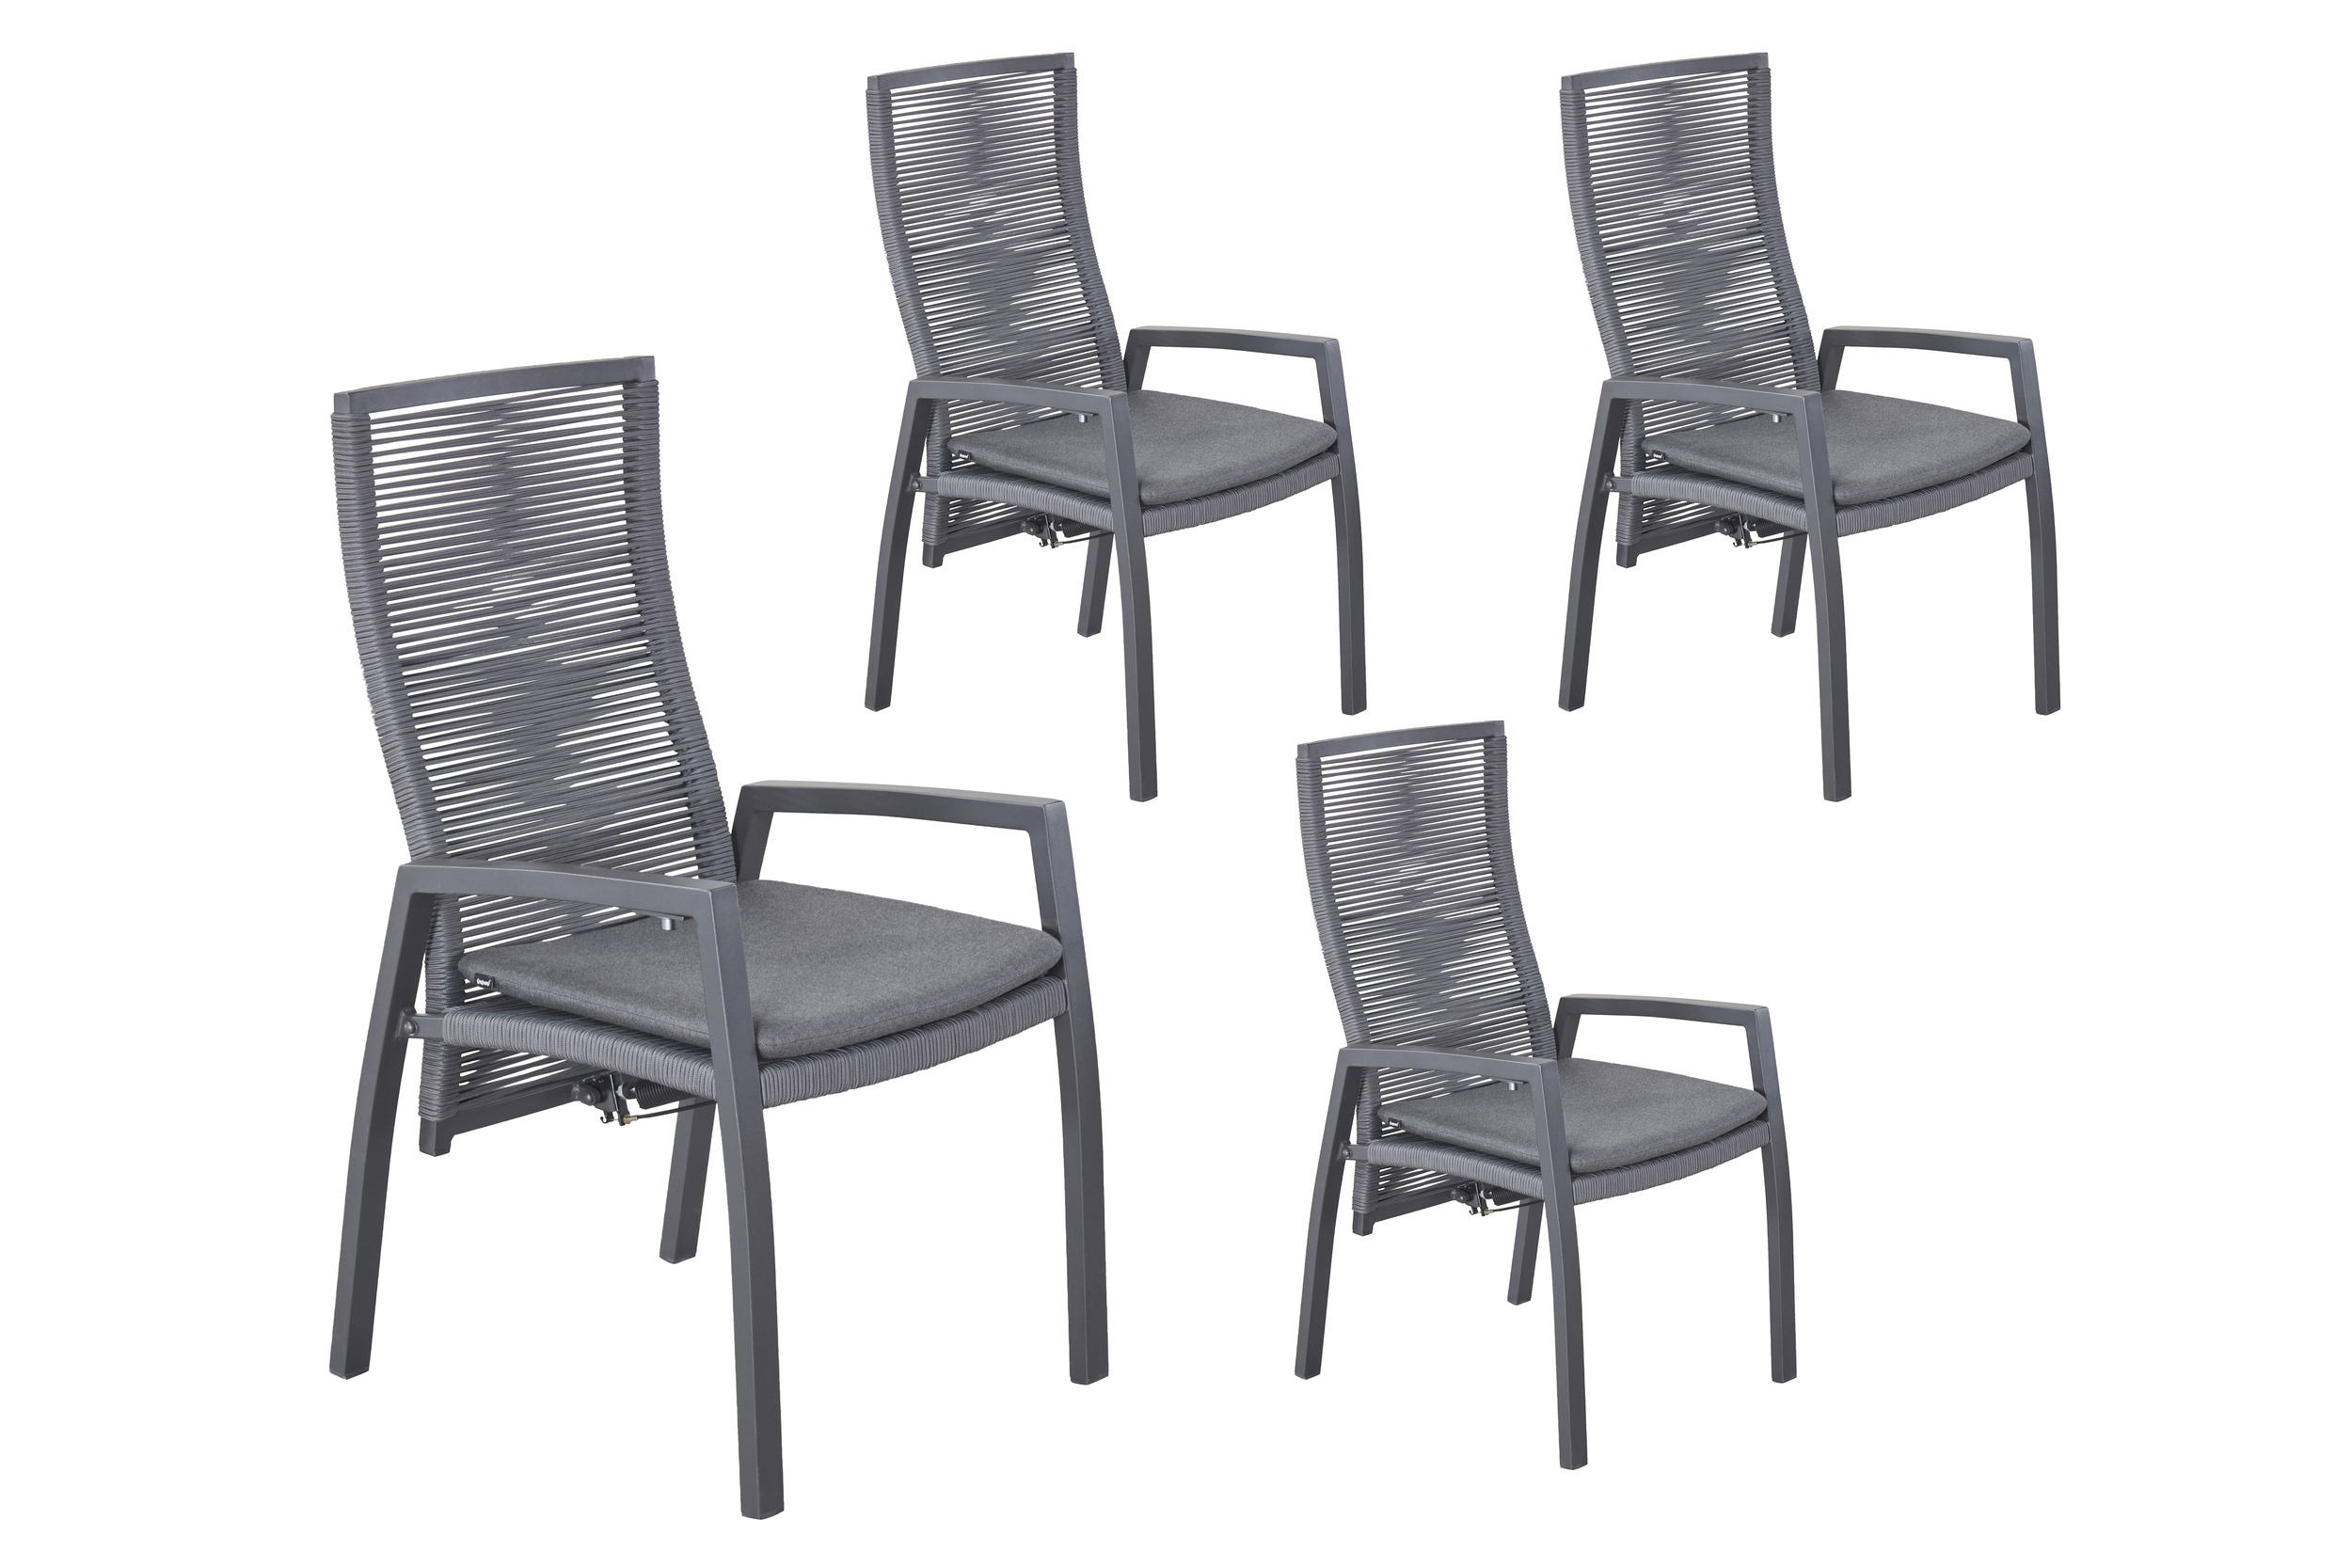 LC Garden 4er Set »Diwo« Gartenstuhl anthrazit/grau Aluminium/Rope Positionsstuhl mit Sitzkissen aus Sunbrella® Stoff